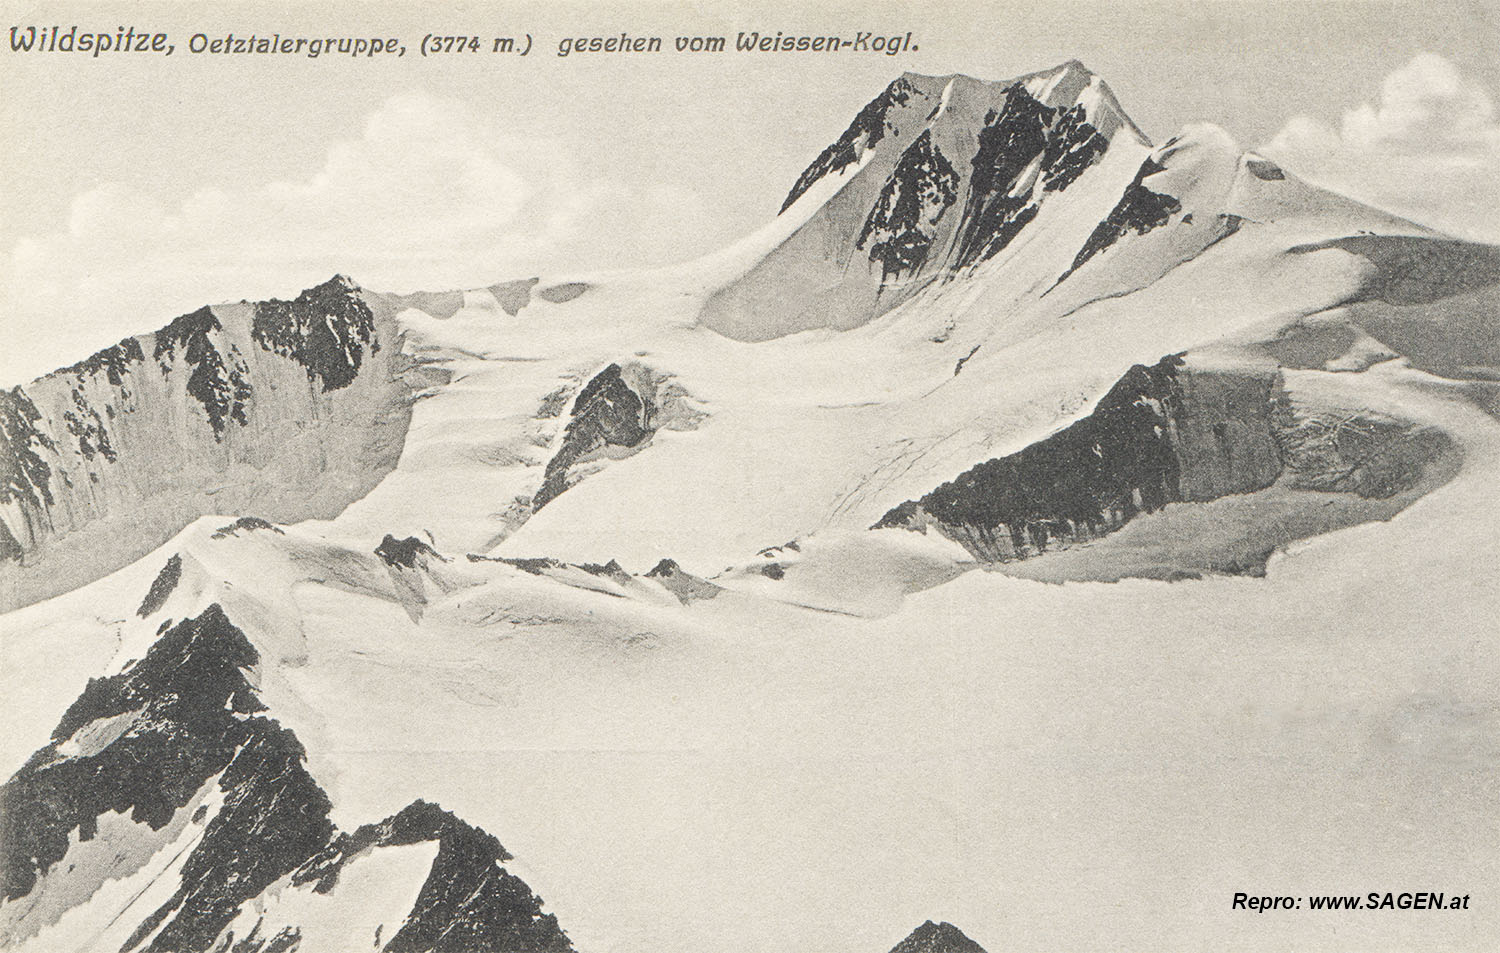 Wildspitze, Ötztalergruppe, gesehen vom Weissen-Kogl